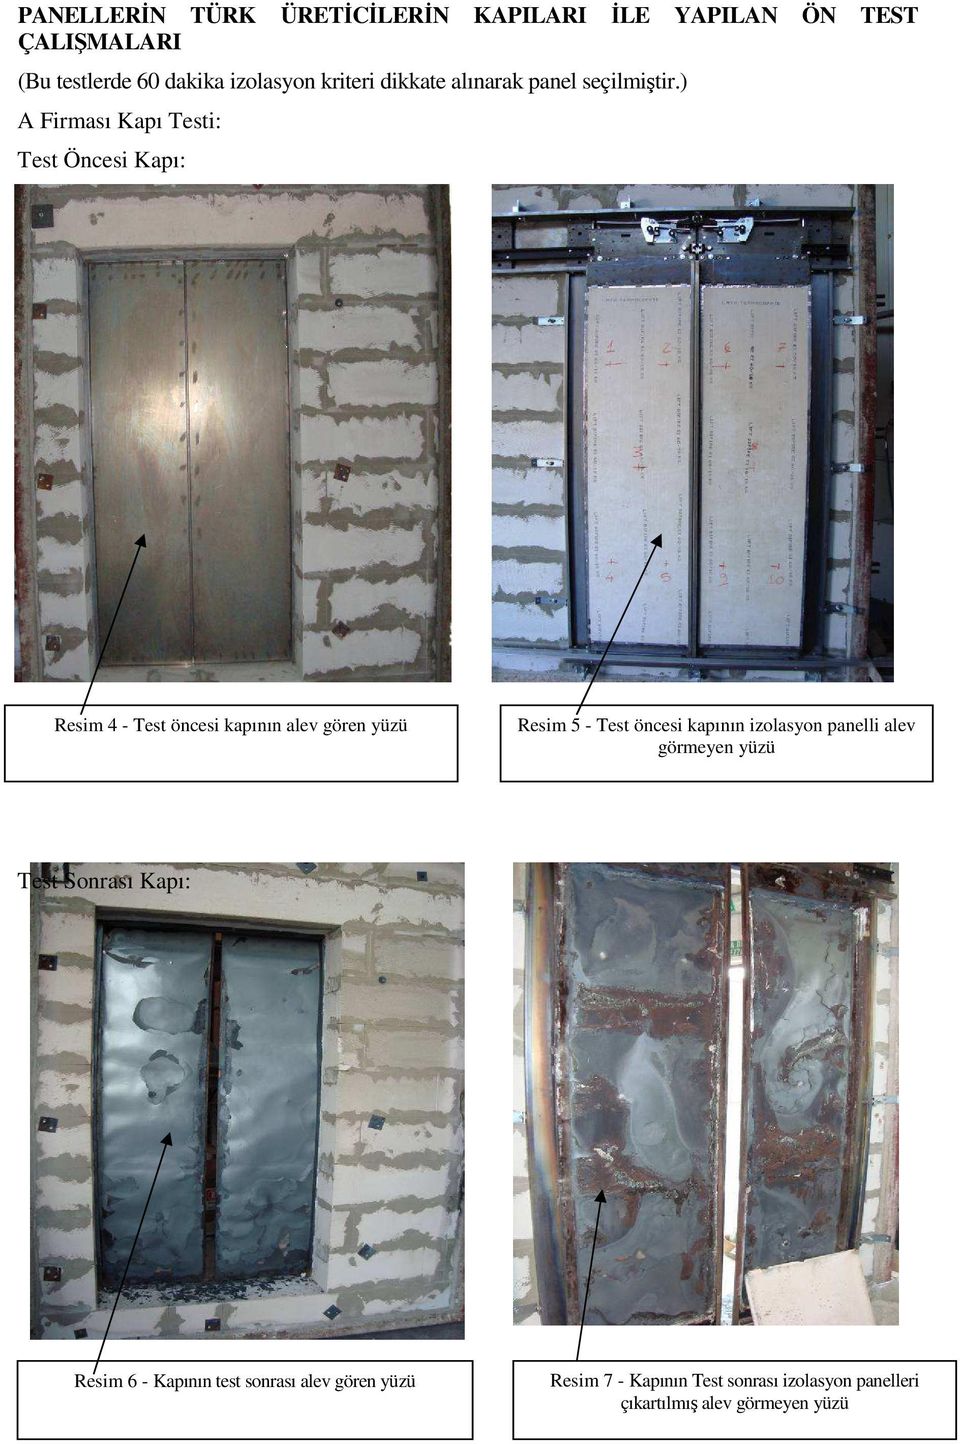 ) A Firması Kapı Testi: Test Öncesi Kapı: Resim 4 - Test öncesi kapının alev gören yüzü Resim 5 - Test öncesi